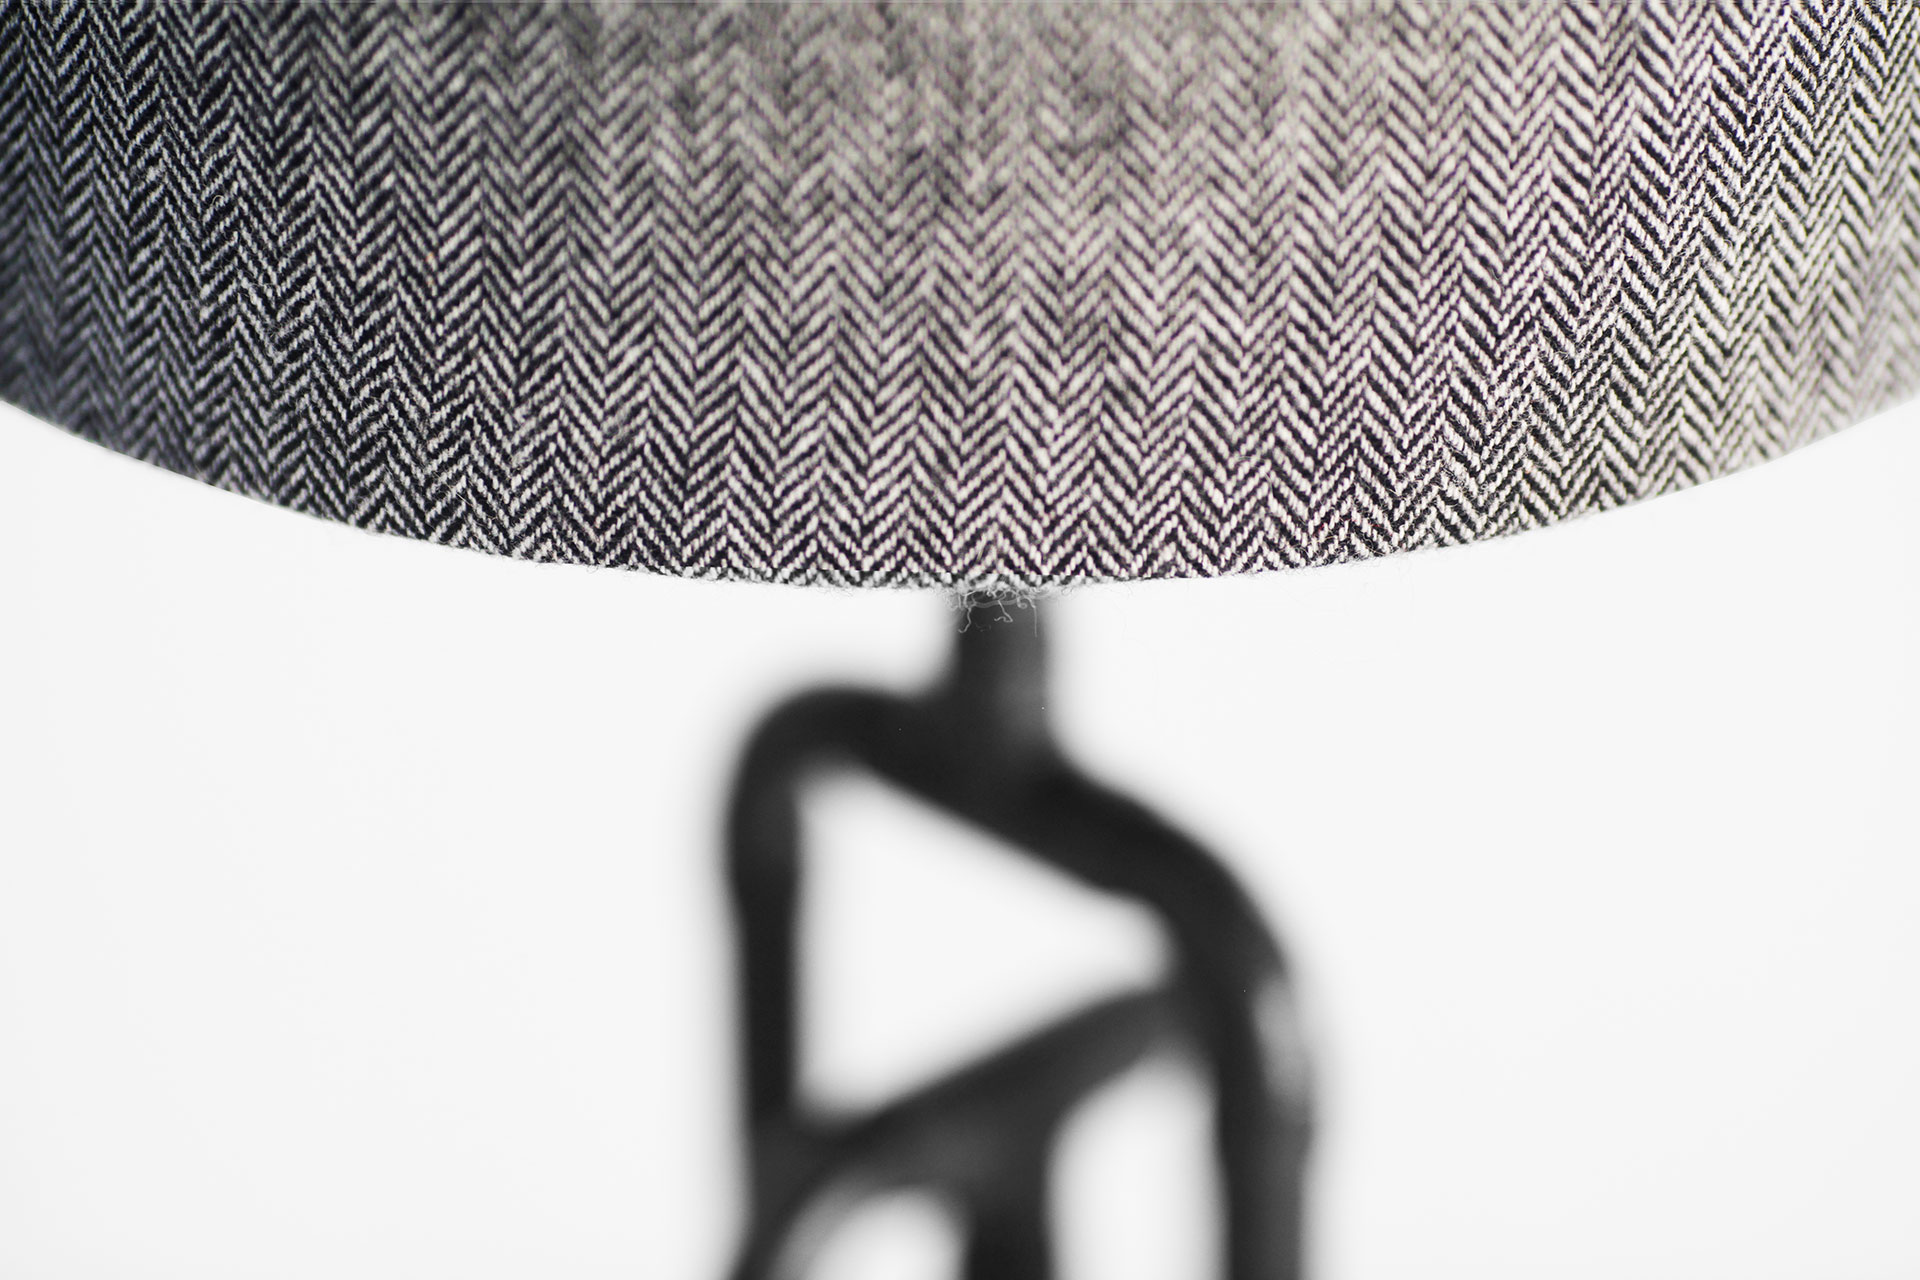 Herringbone tweed lamp shade in black patina table lamp